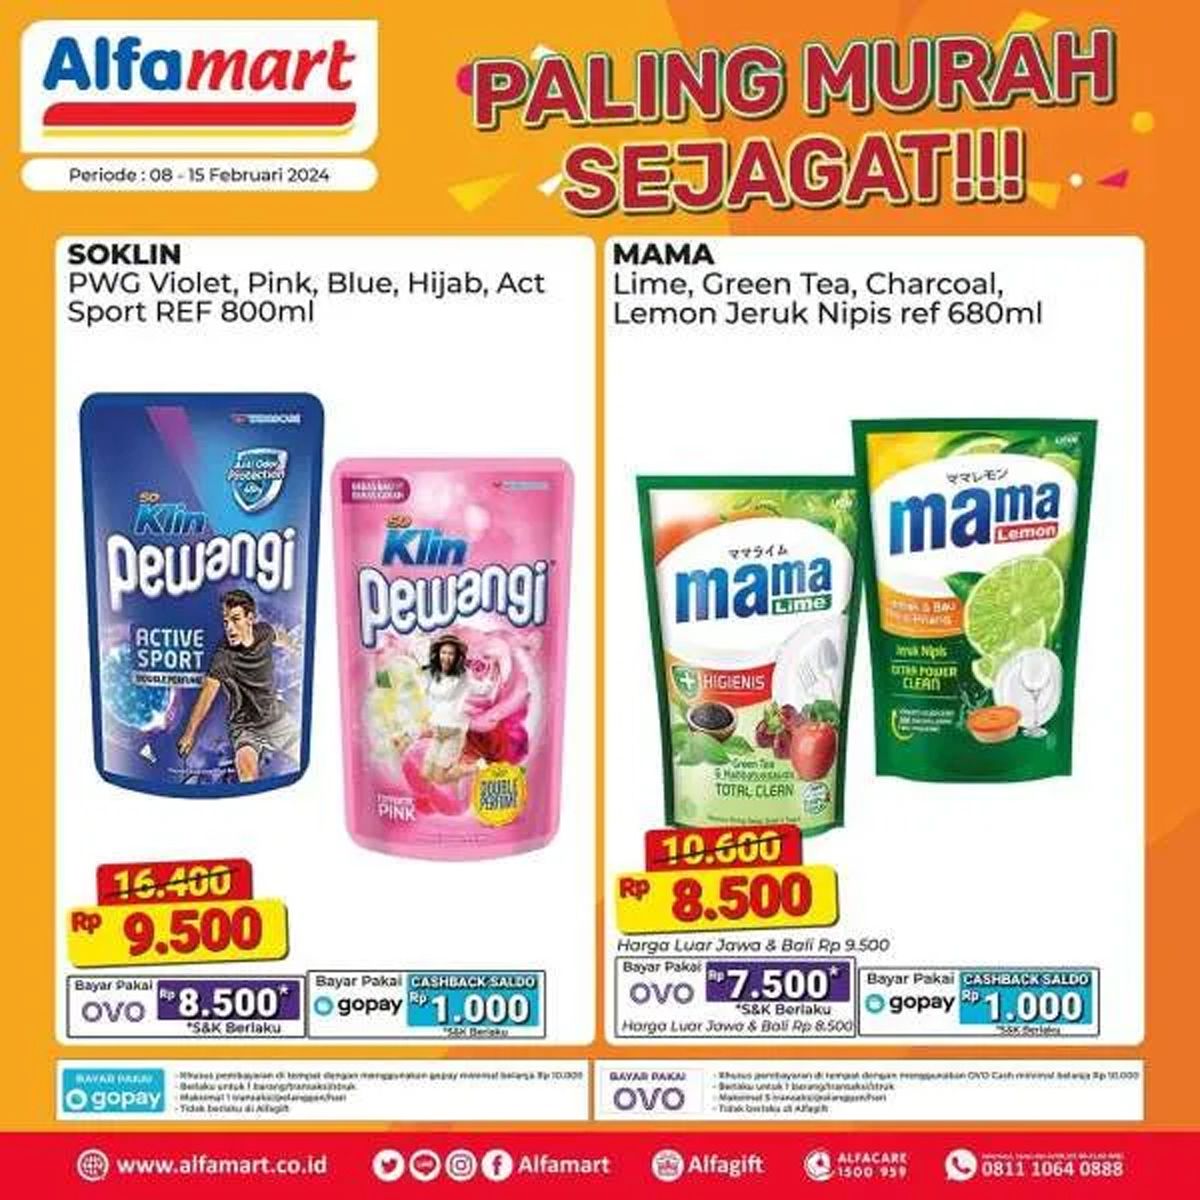  Katalog 8 produk yang dijual dalam program promo Alfamart Paling Murah Sejagat periode 8 - 15 Februari 2024./Instagram Alfamart.